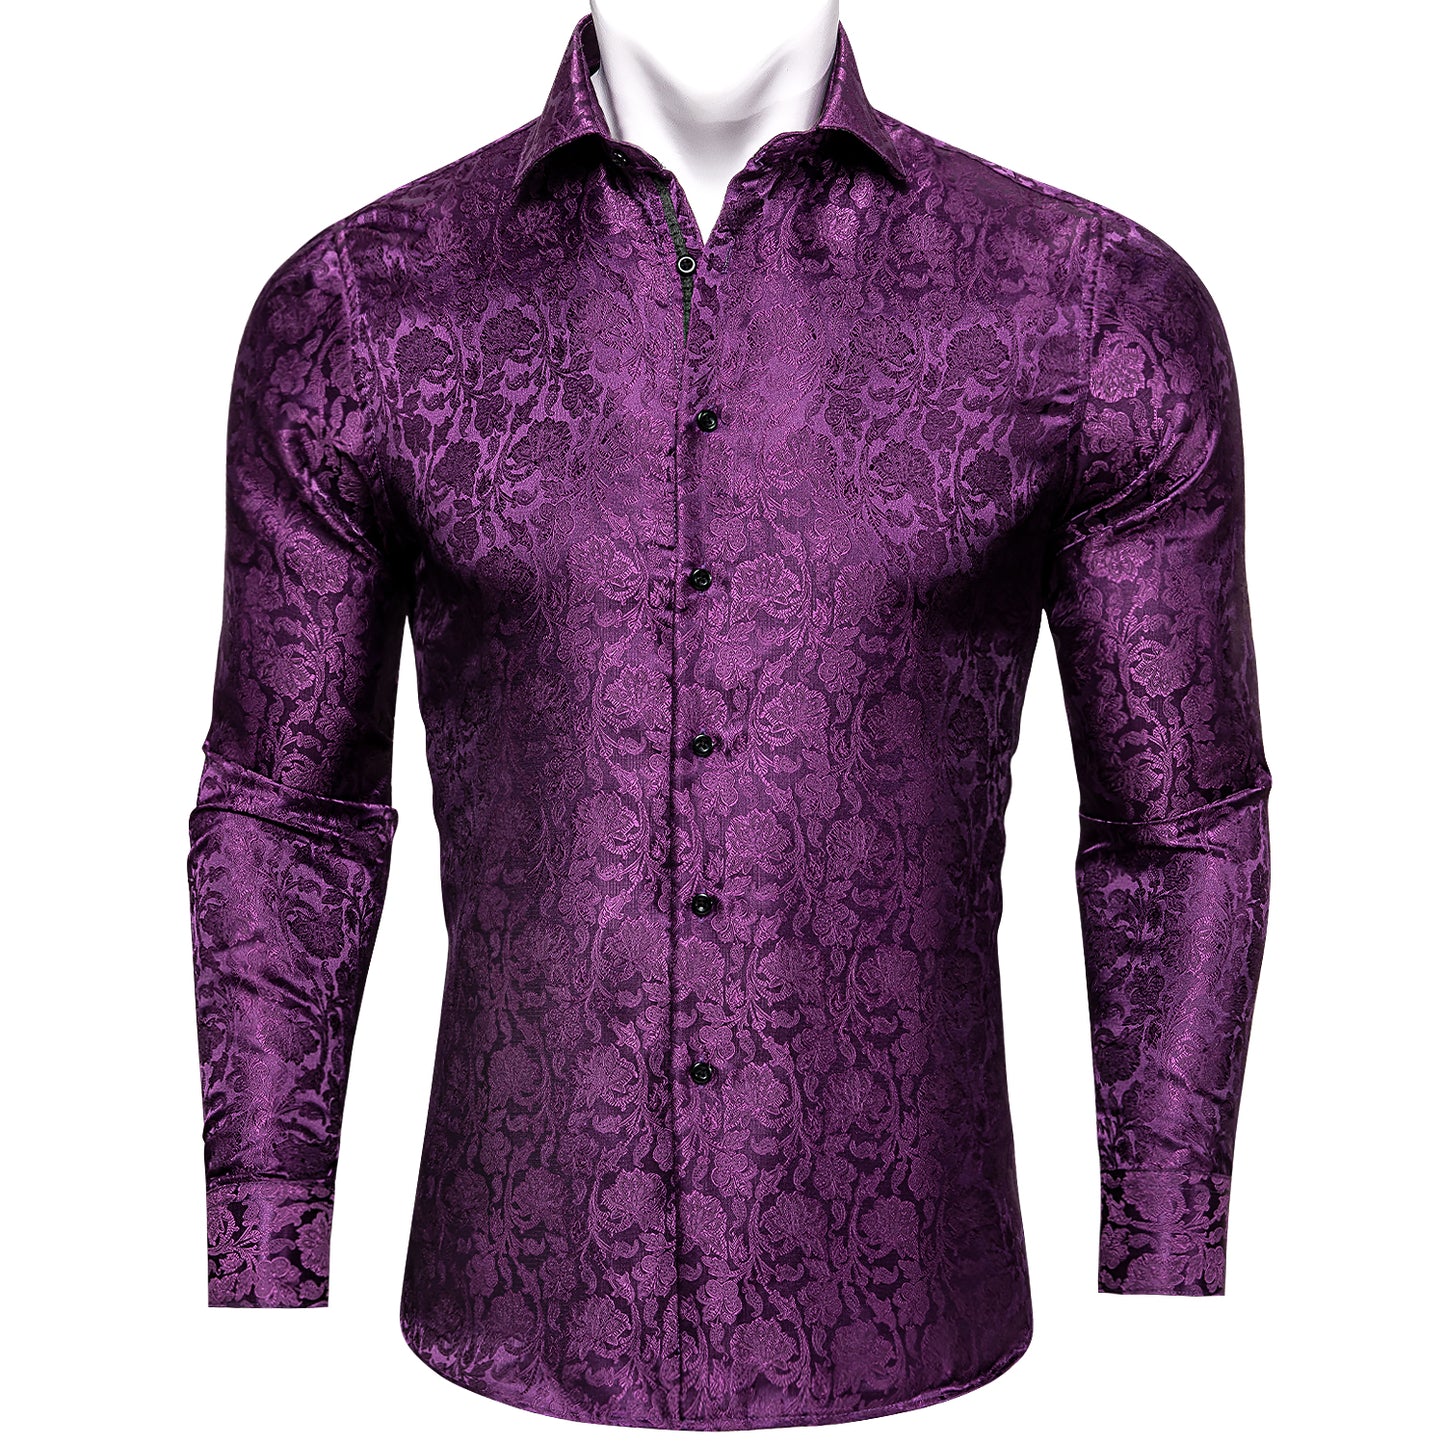 CY0093 Novelty Silky Shirt - Purple Garden